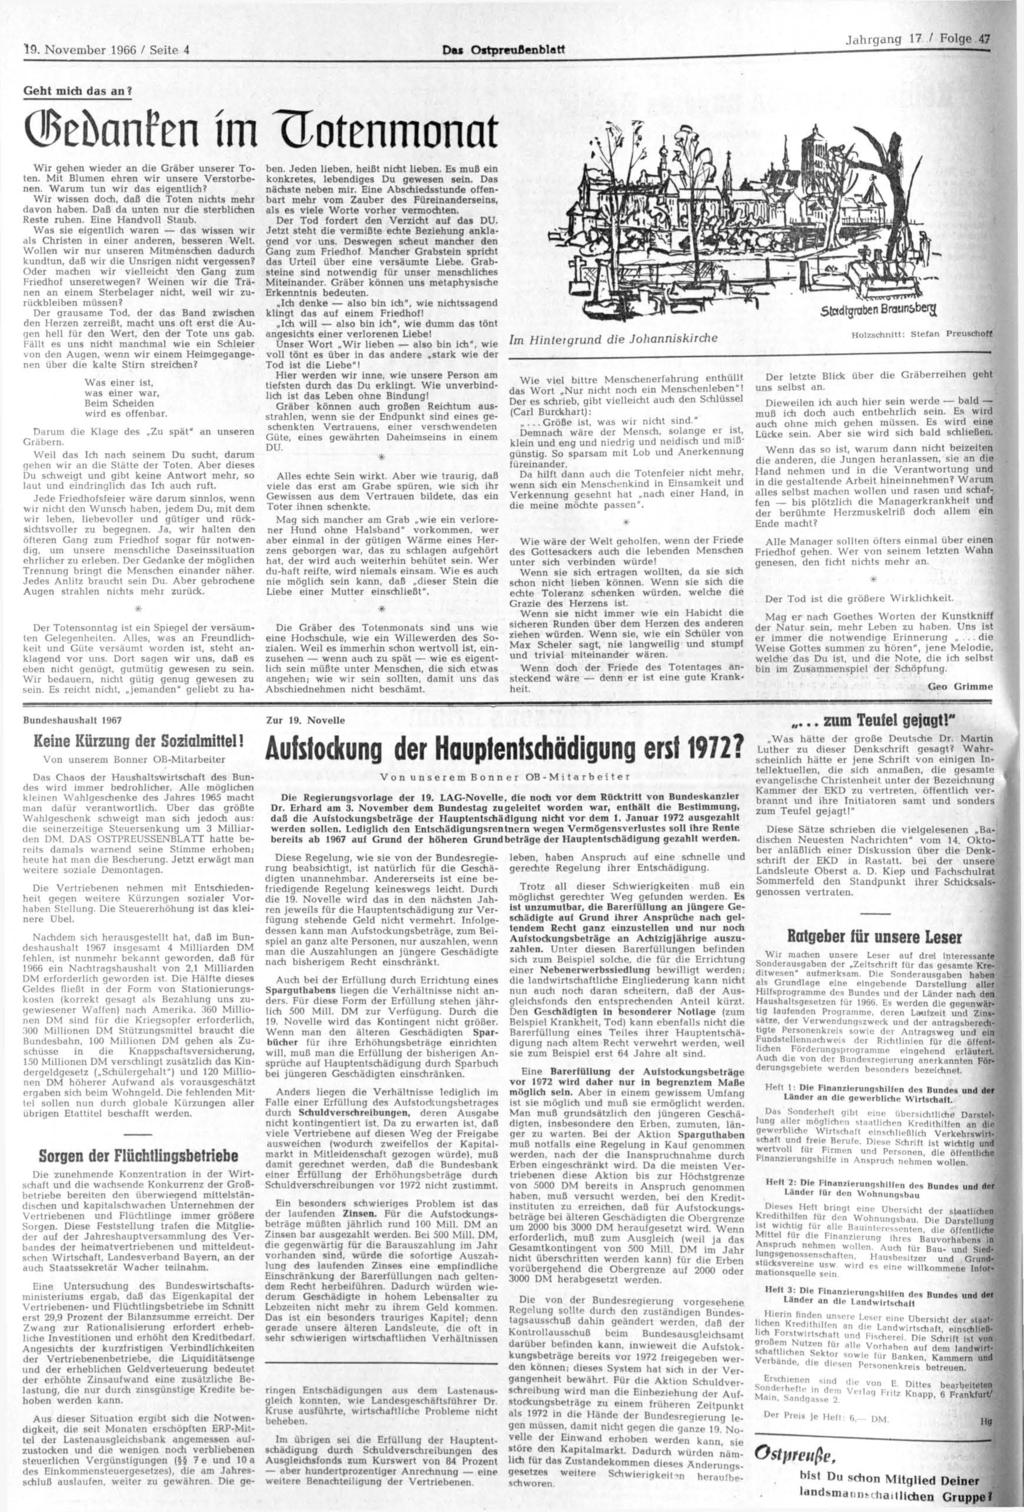 19. November 1966 / Seite 4 Das Ostpreußenblatt, Geht midi das an? (Bebanfen im Trotenmonat Wir gehen wieder an die Gräber unserer Toten. Mit Blumen ehren wir unsere Verstorbenen.